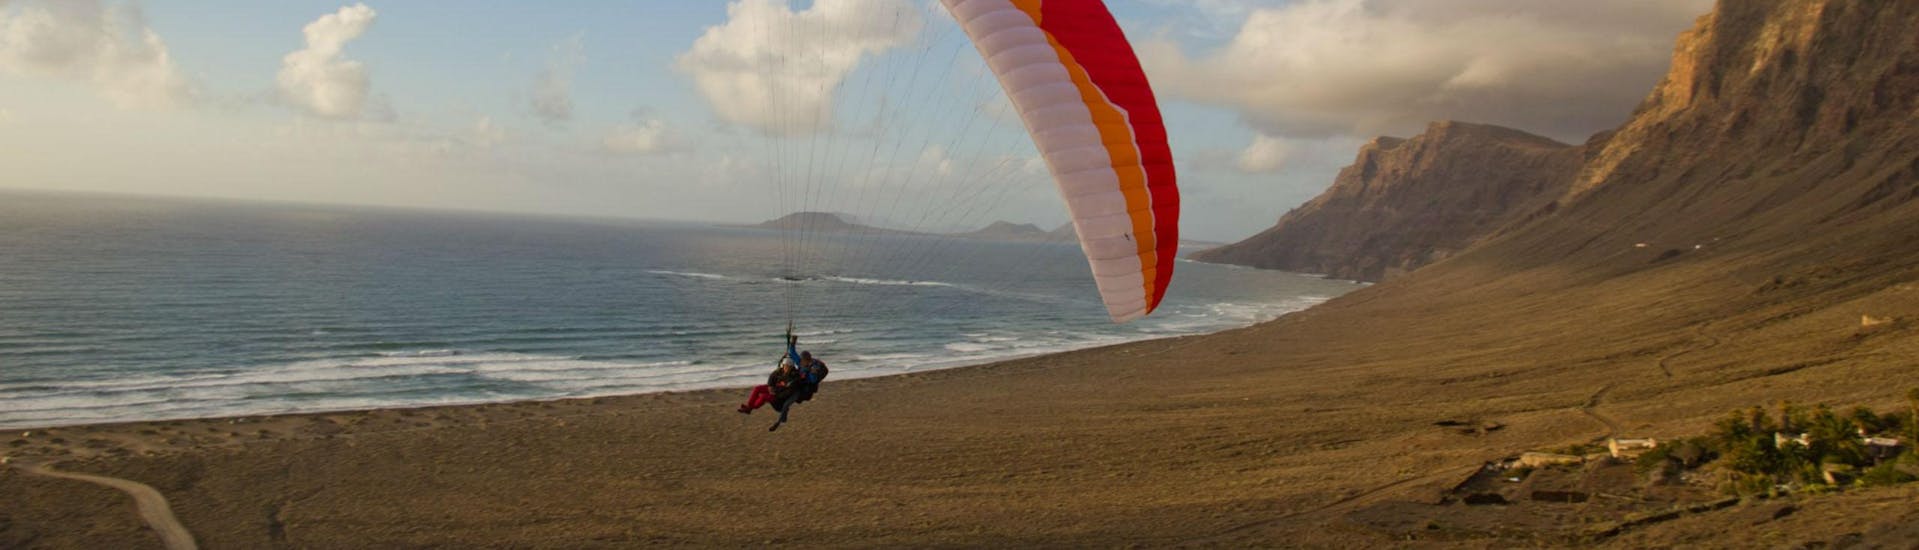 Tandem Paragliding in Lanzarote - Deluxe.